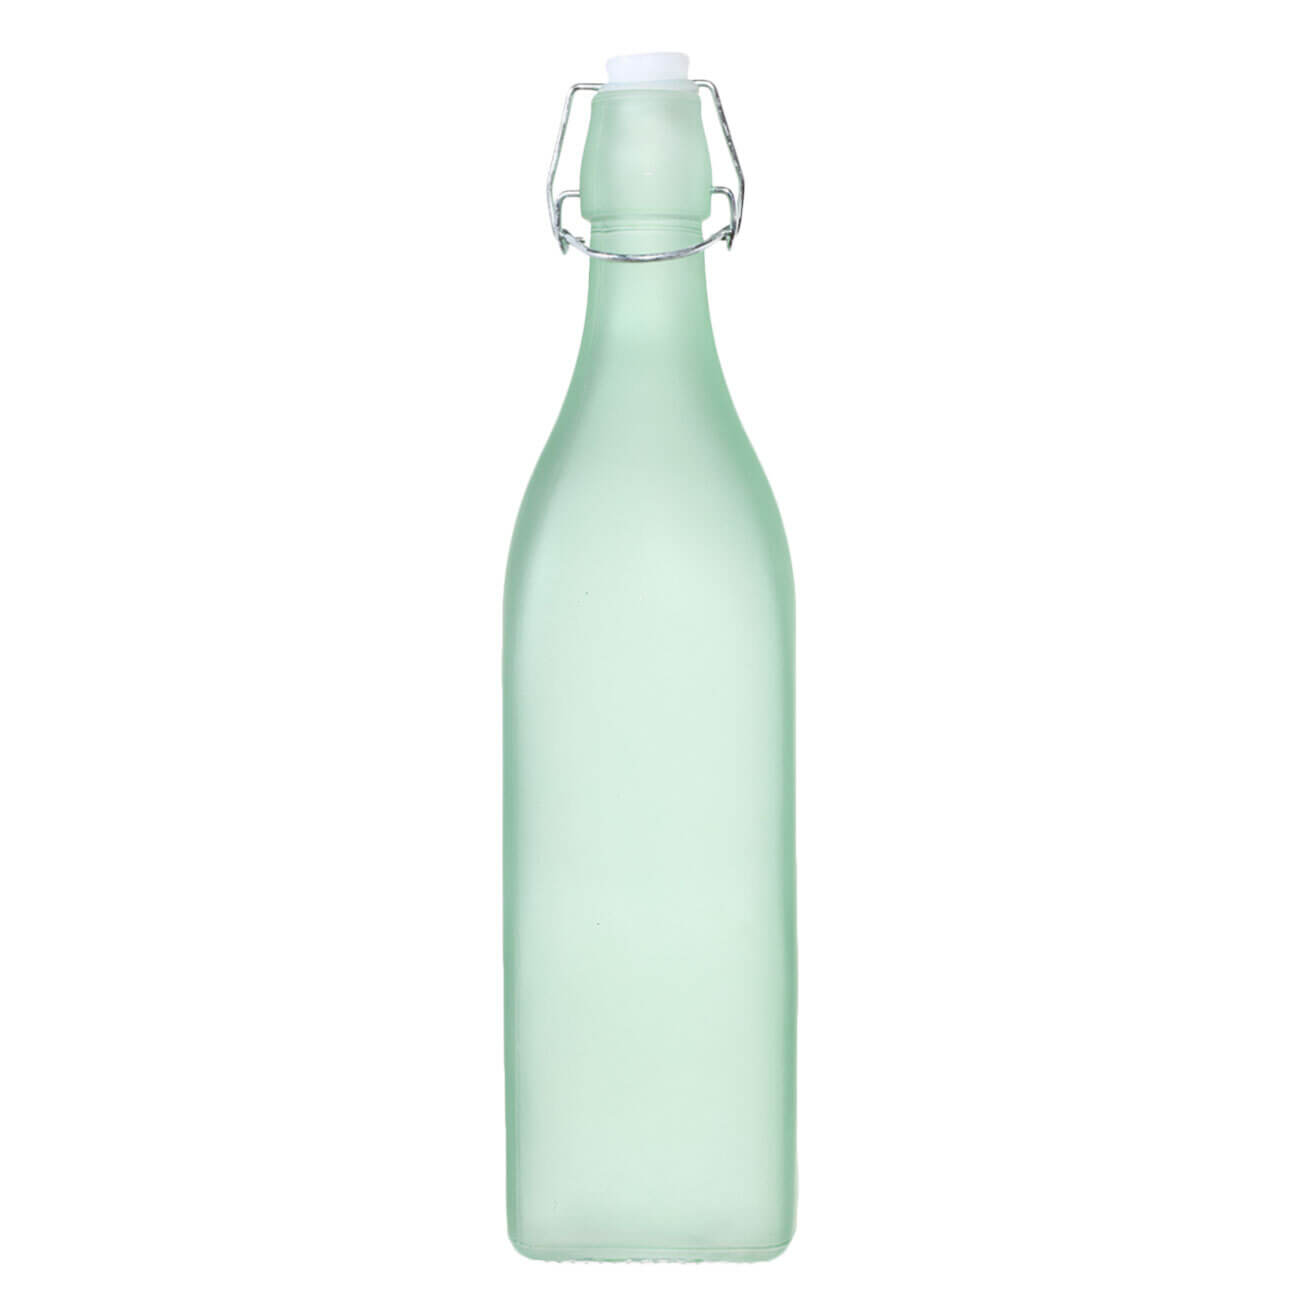 Бутылка для масла или уксуса, 1 л, с клипсой, стекло/металл, зеленая, Light kitchen изображение № 1